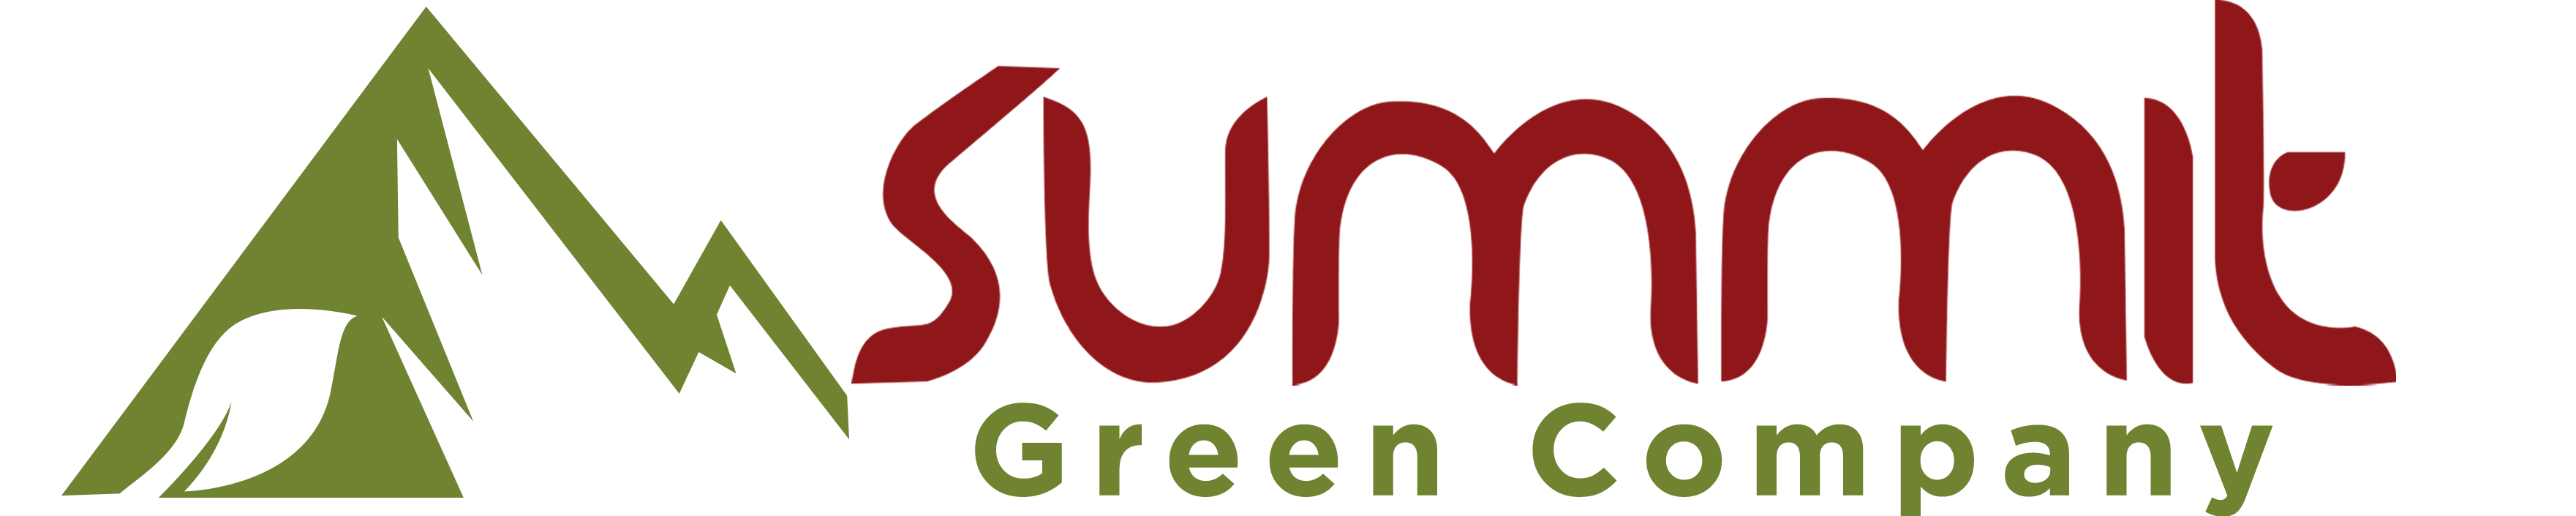 summit website logo